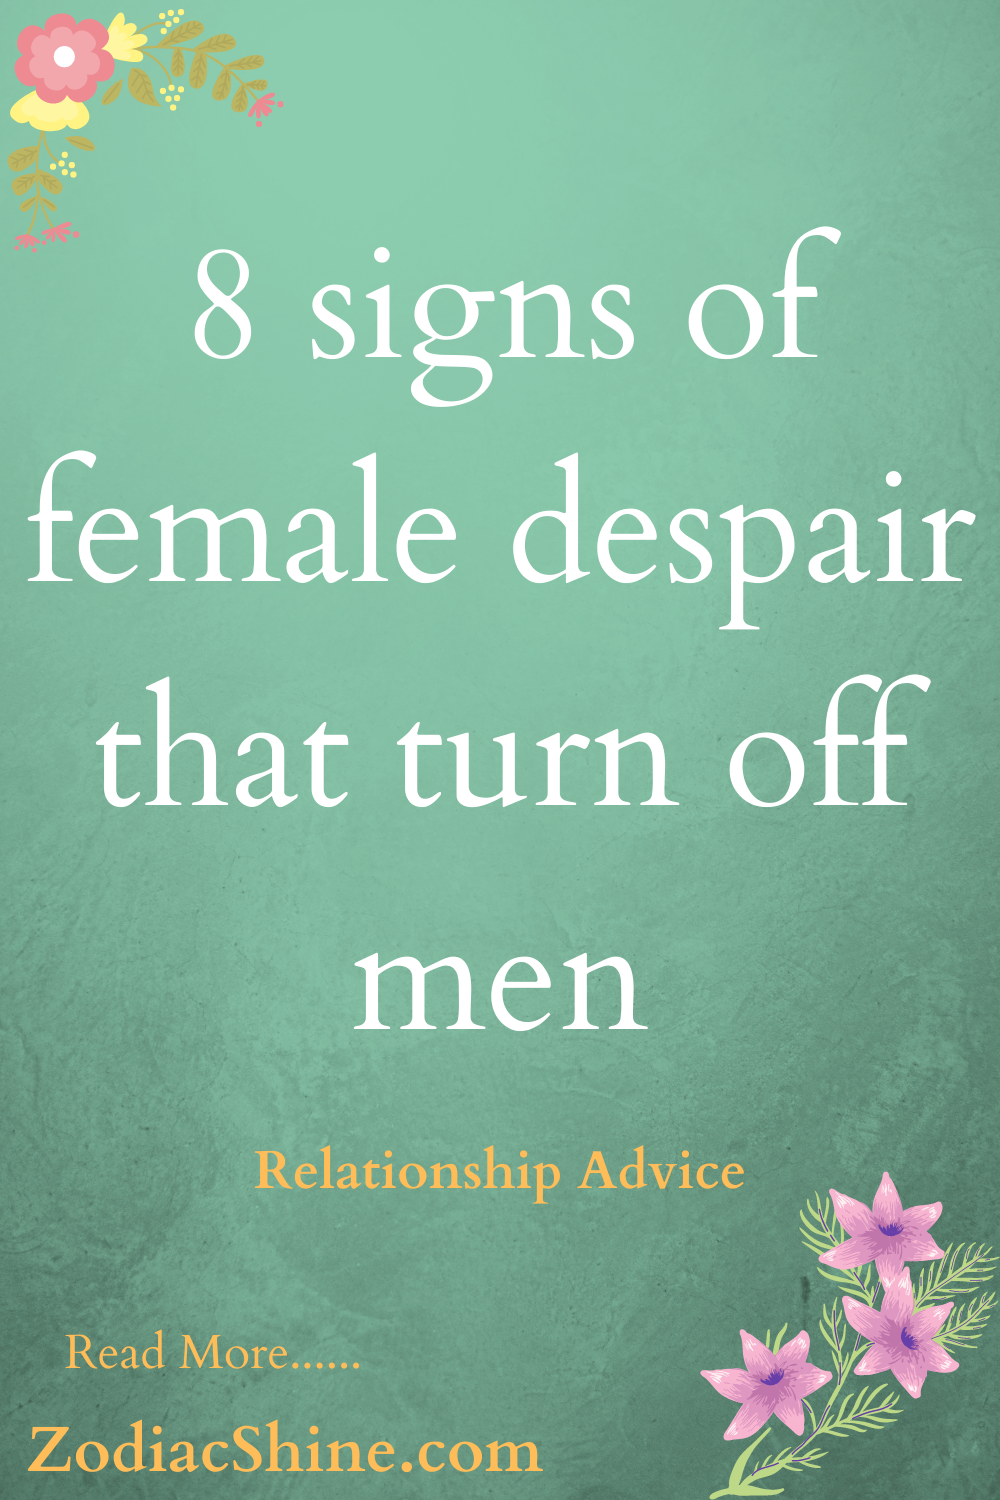 8 signs of female despair that turn off men